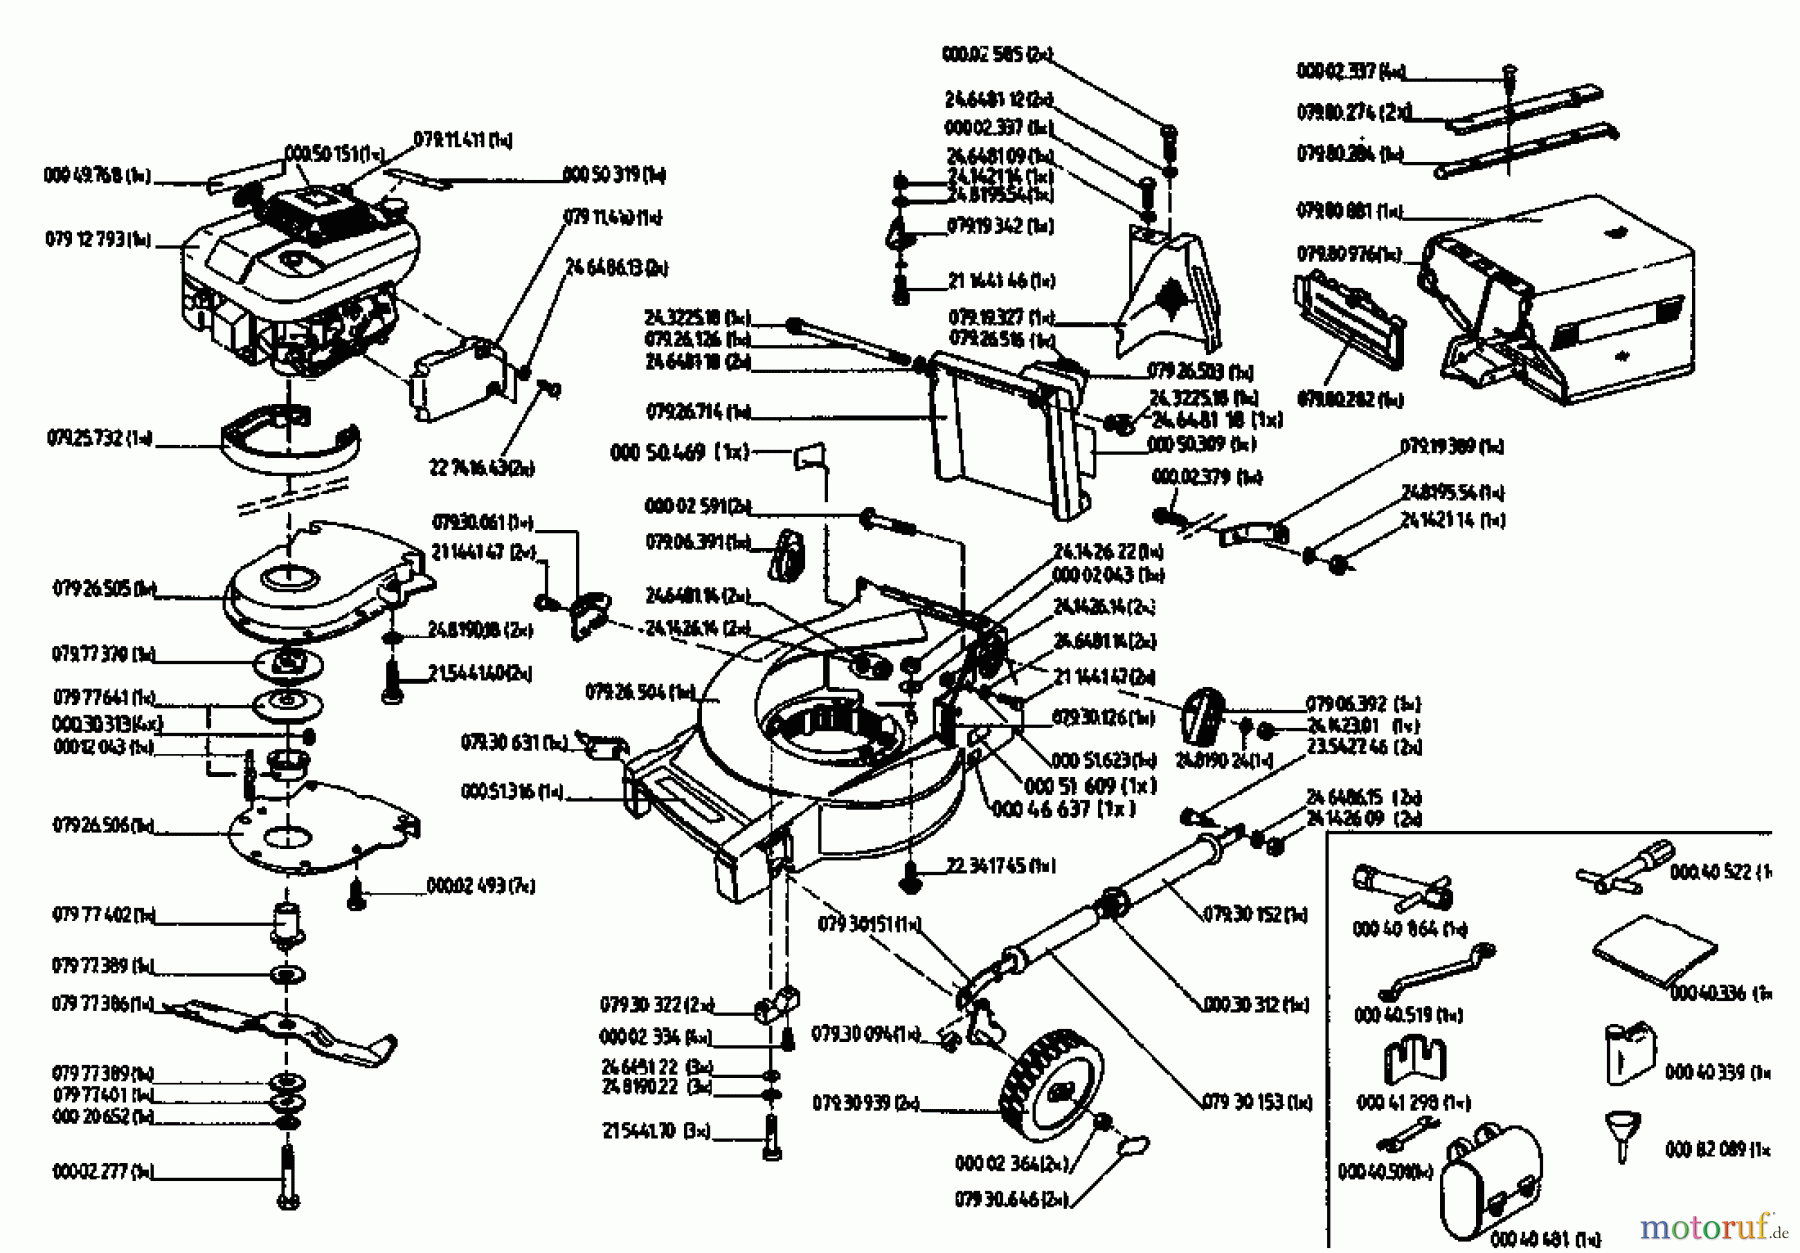  Gutbrod Tondeuse thermique tractée MH 454 RVS 04024.03  (1994) Machine de base